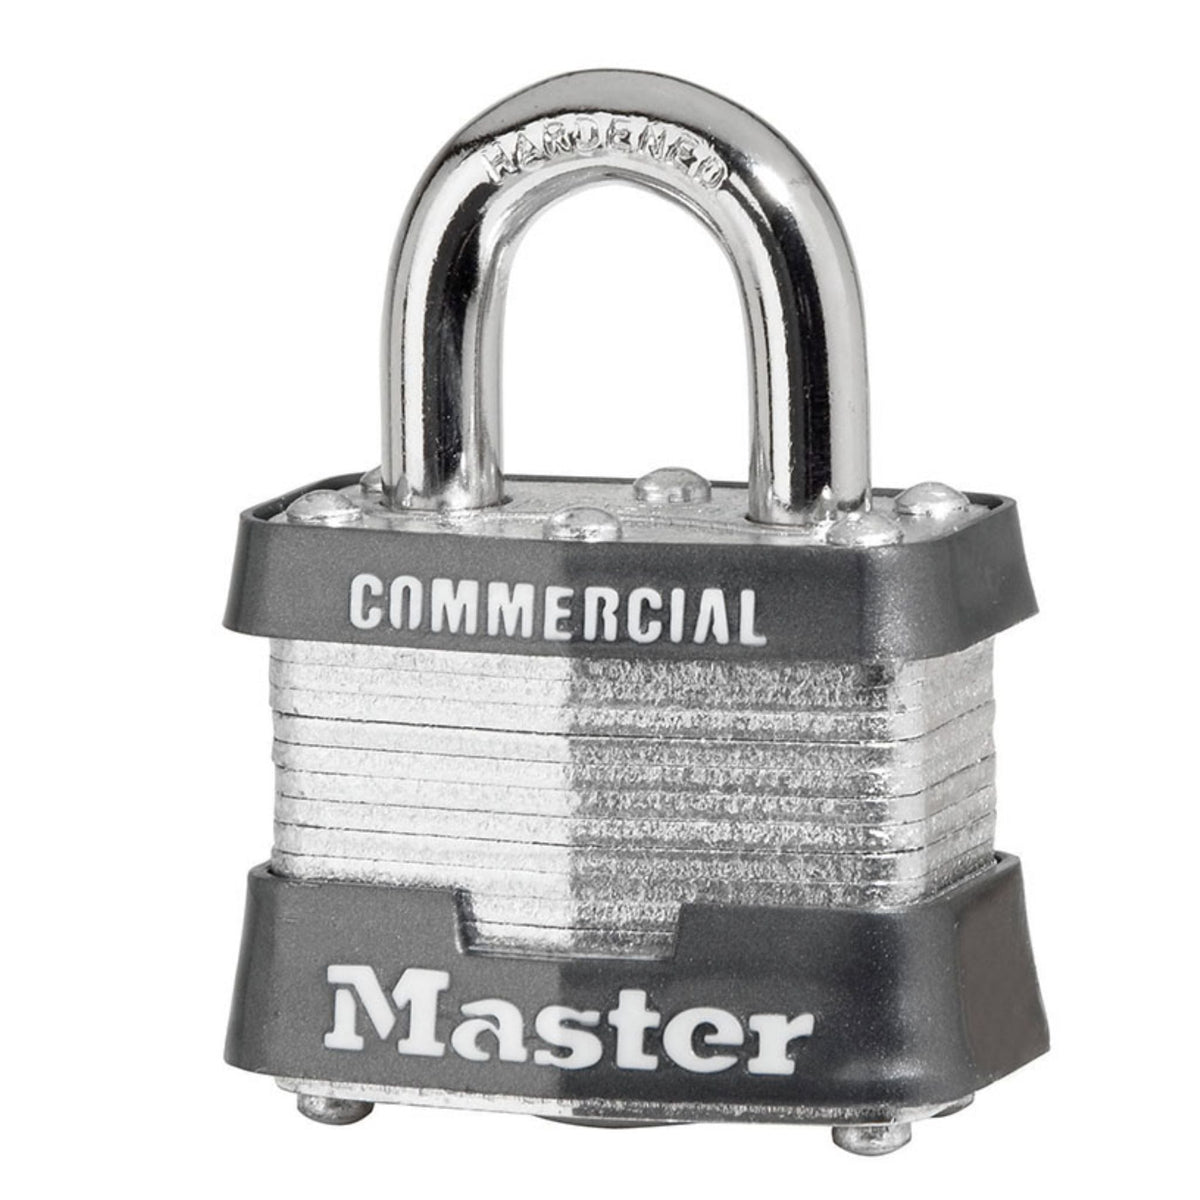 Master Lock 3KA Lock Laminated Steel Keyed Alike Padlocks - The Lock Source